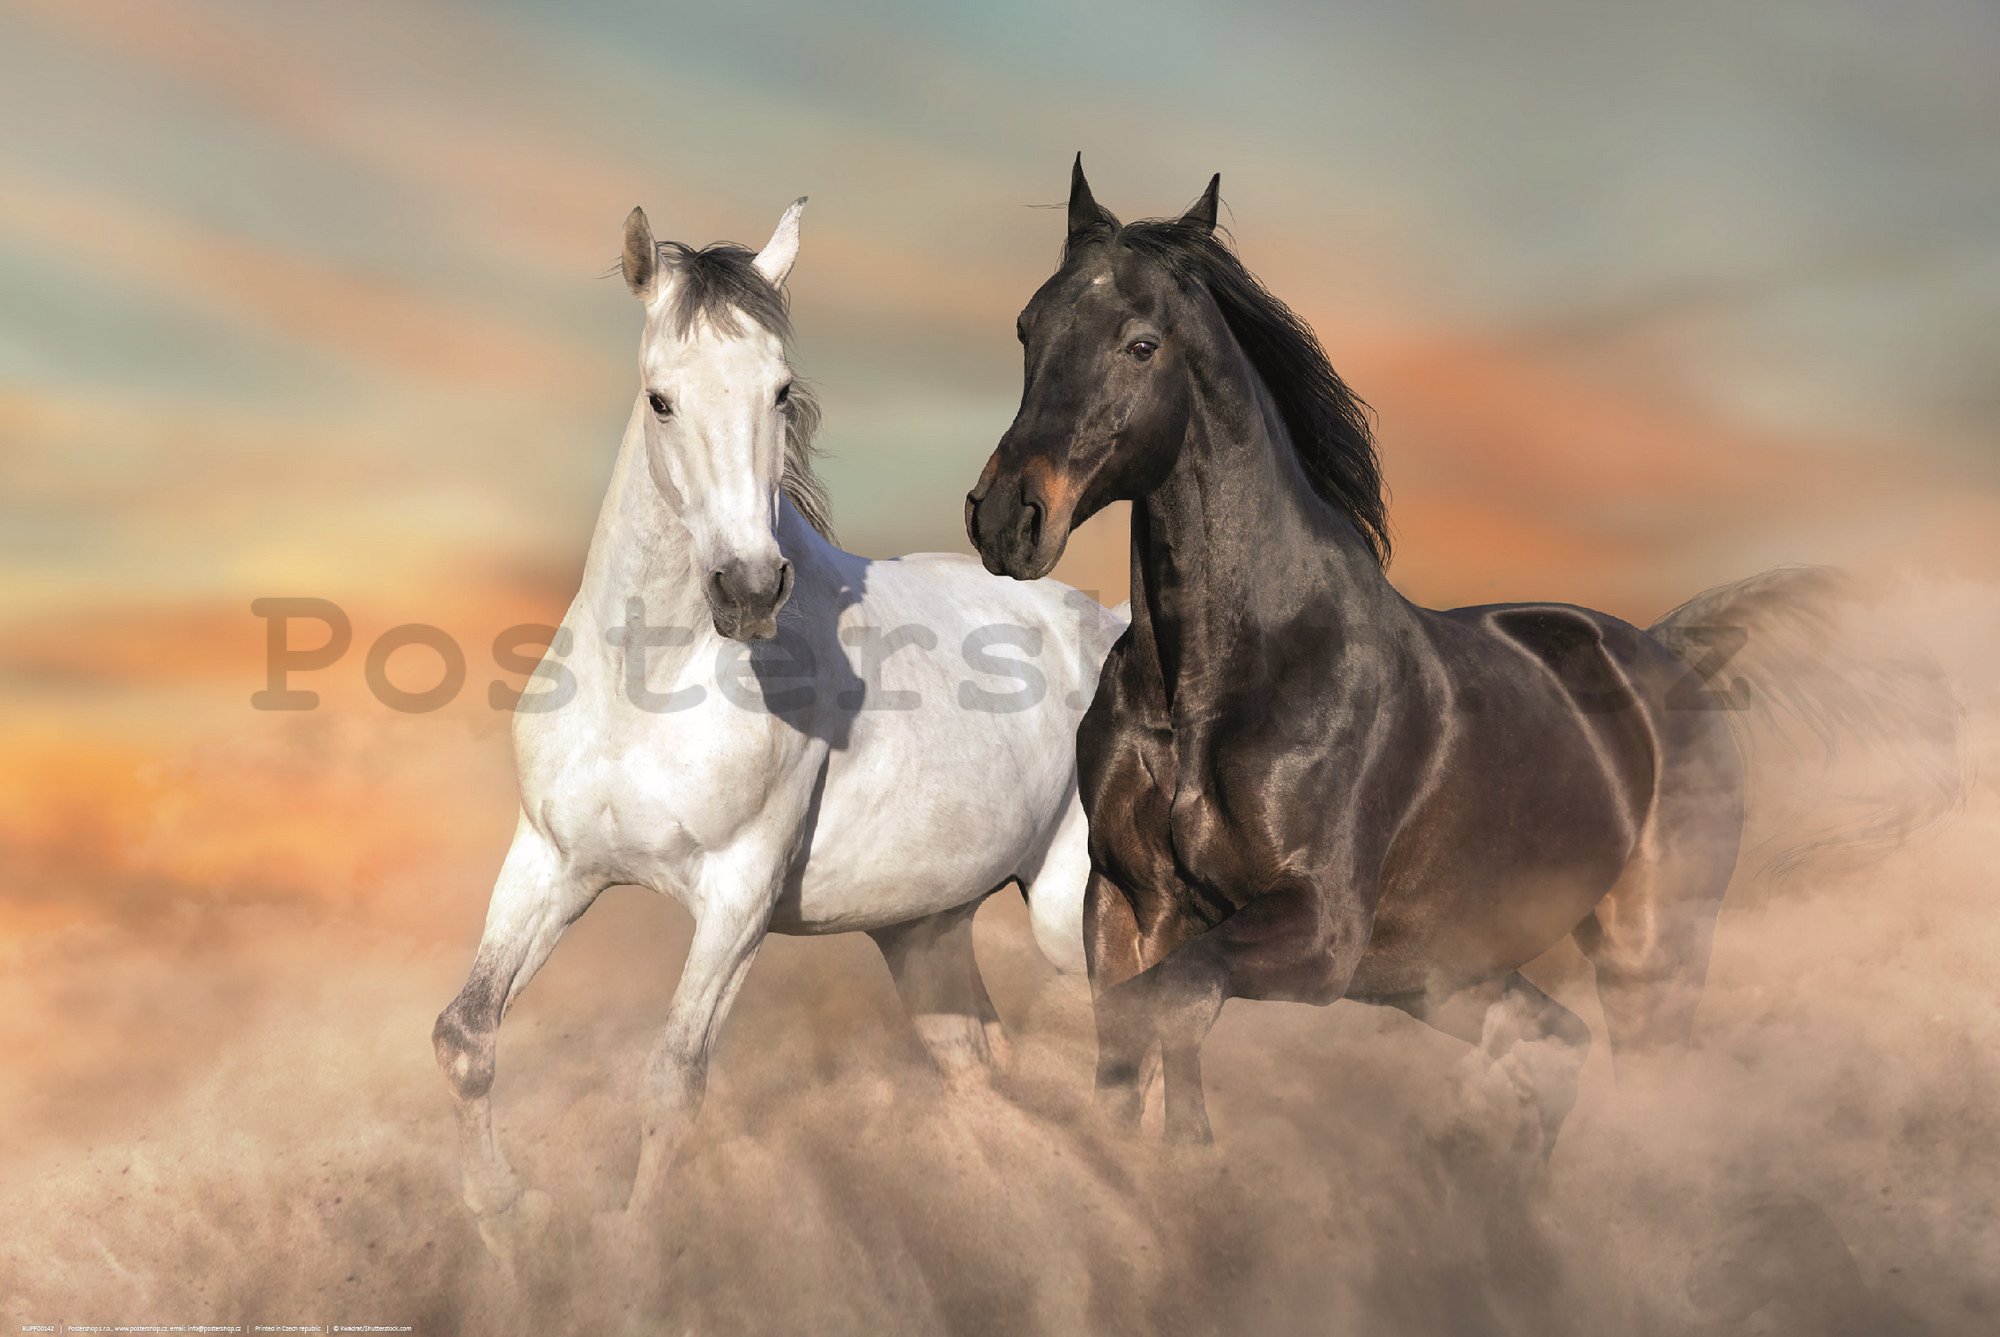 Plakát: Cválající koně v písku